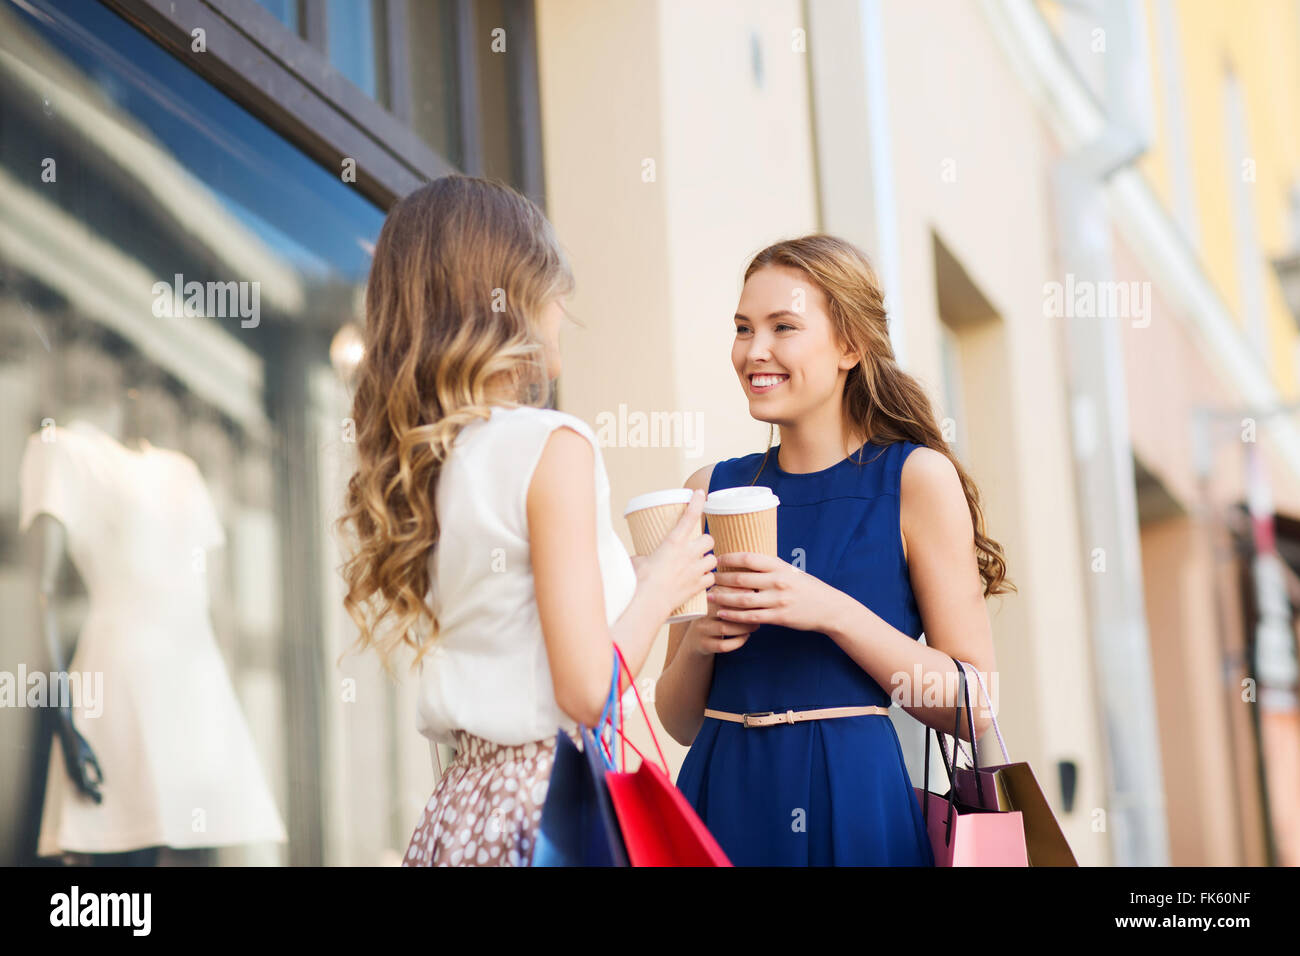 junge Frauen mit Einkaufstaschen und Kaffee Shop Stockfoto